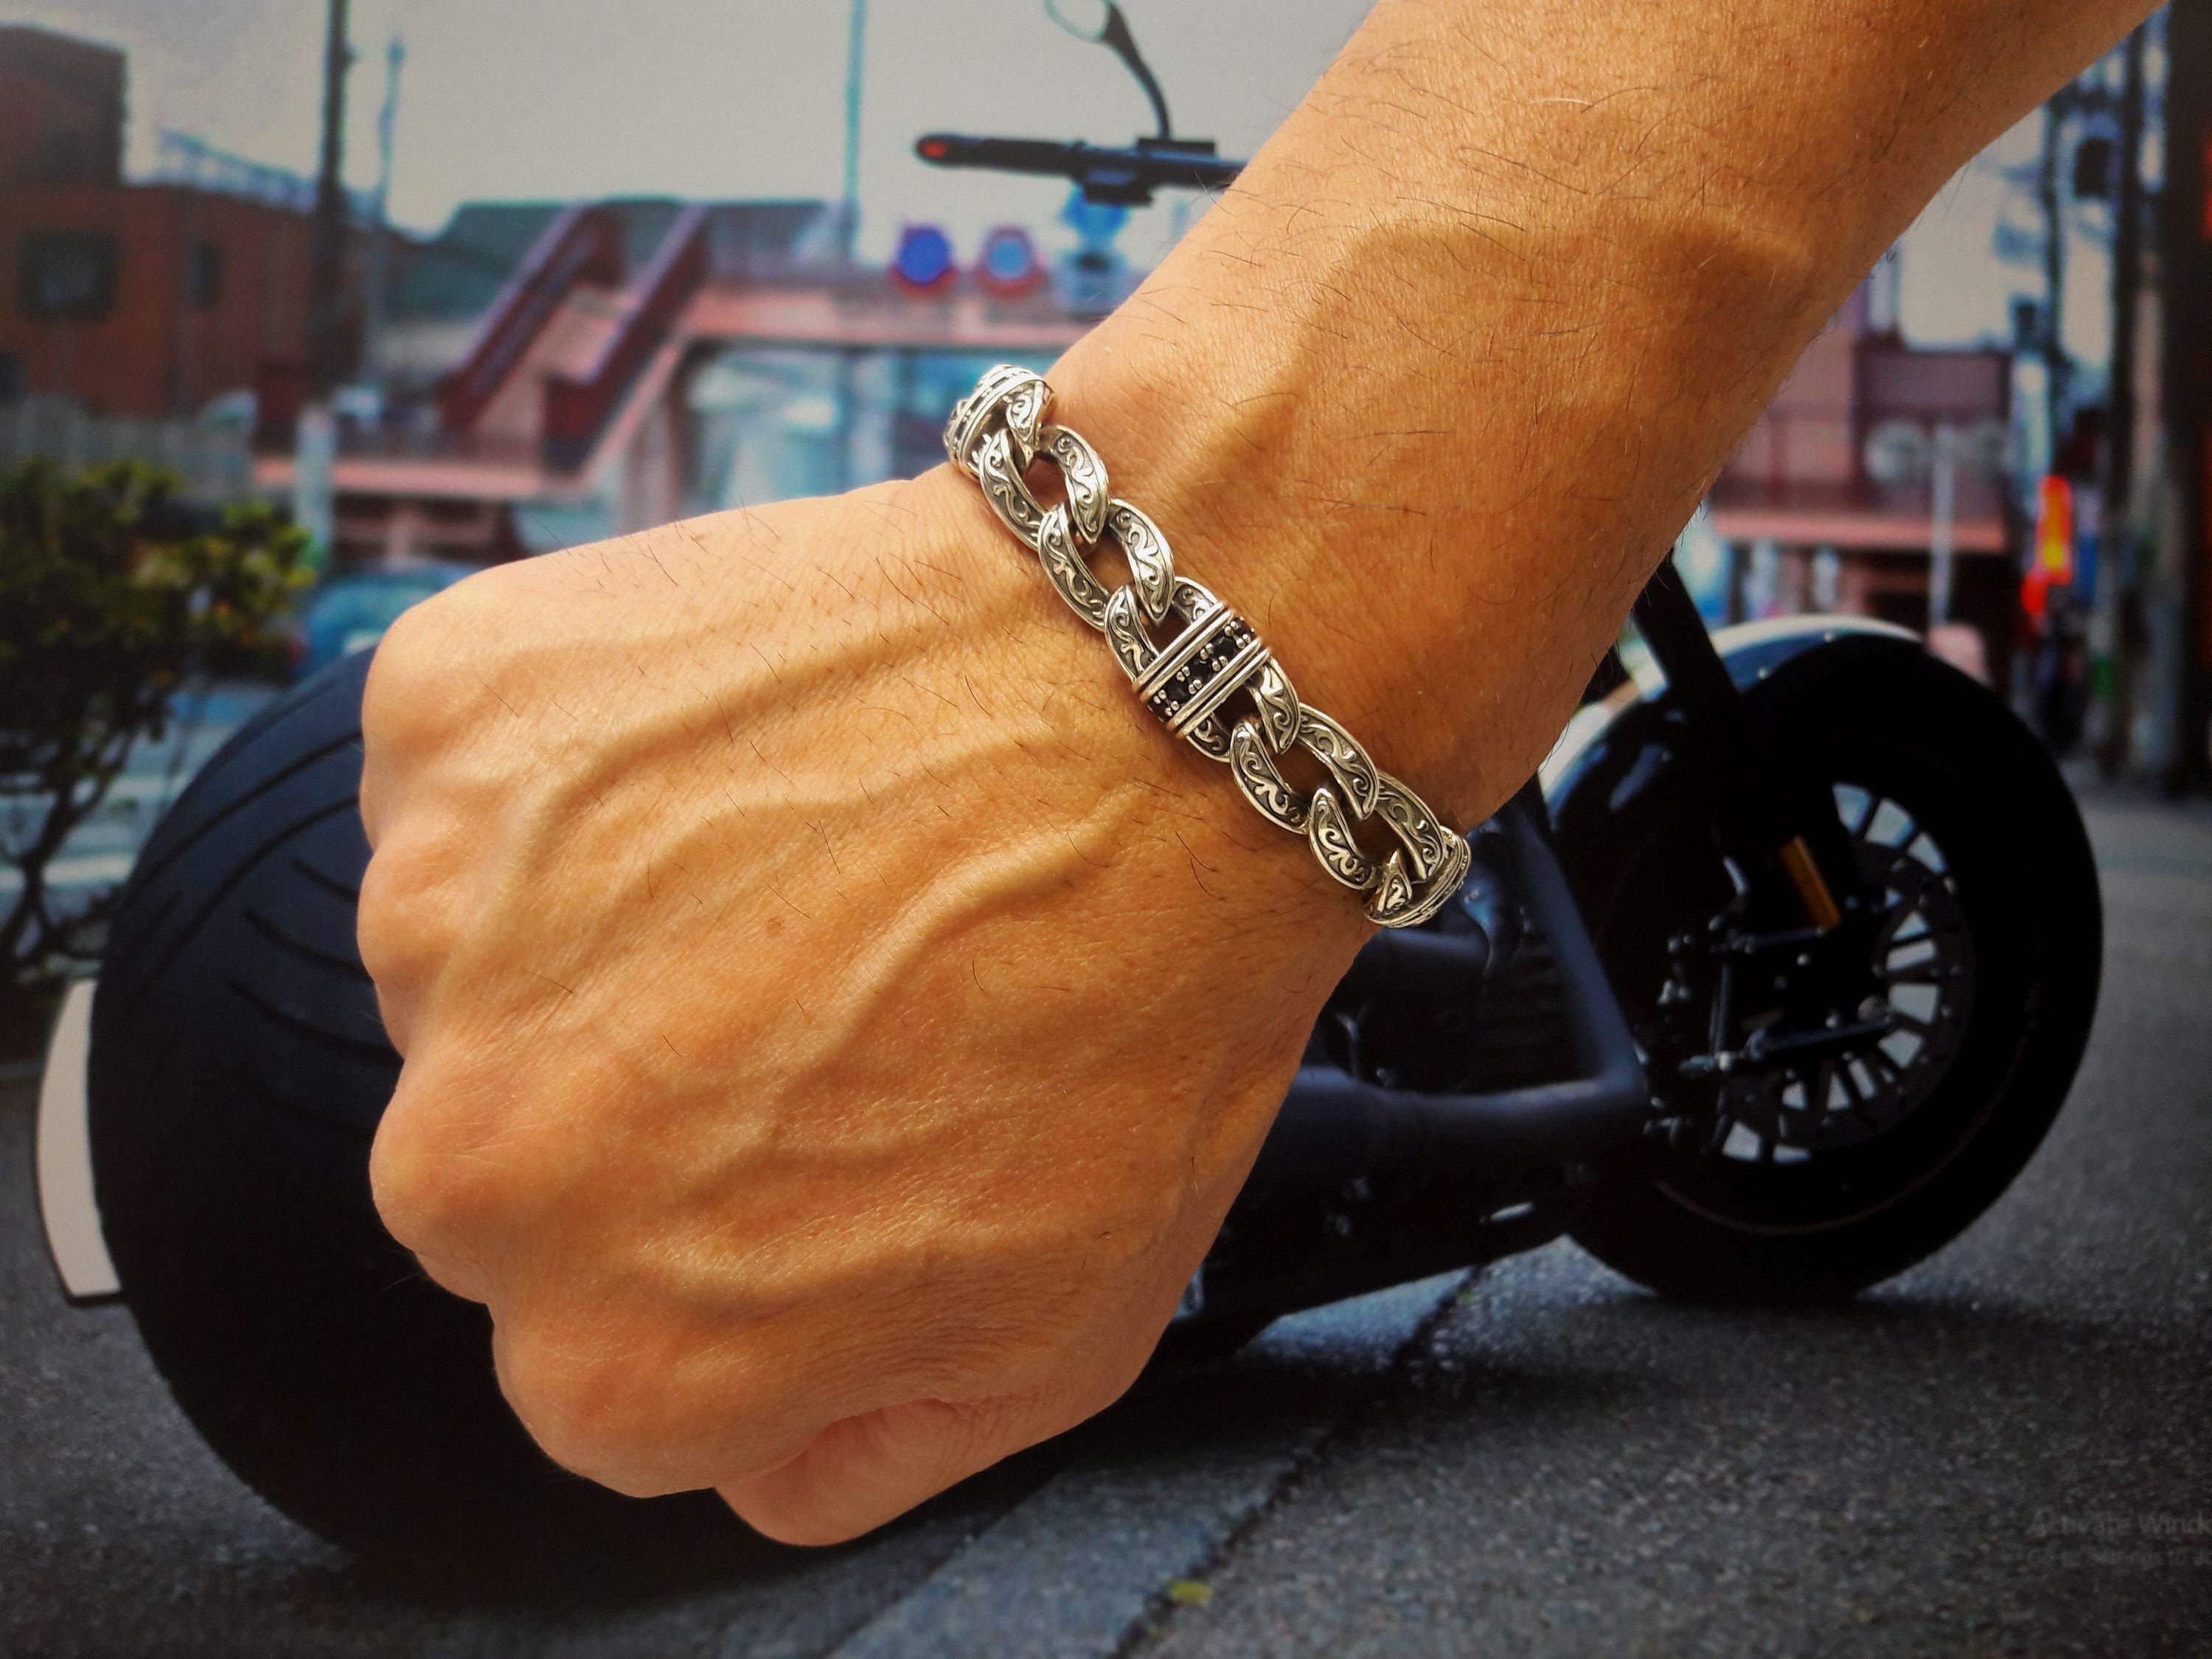 Chunky Chain Bracelet for Men Women Sterling Silver Large 